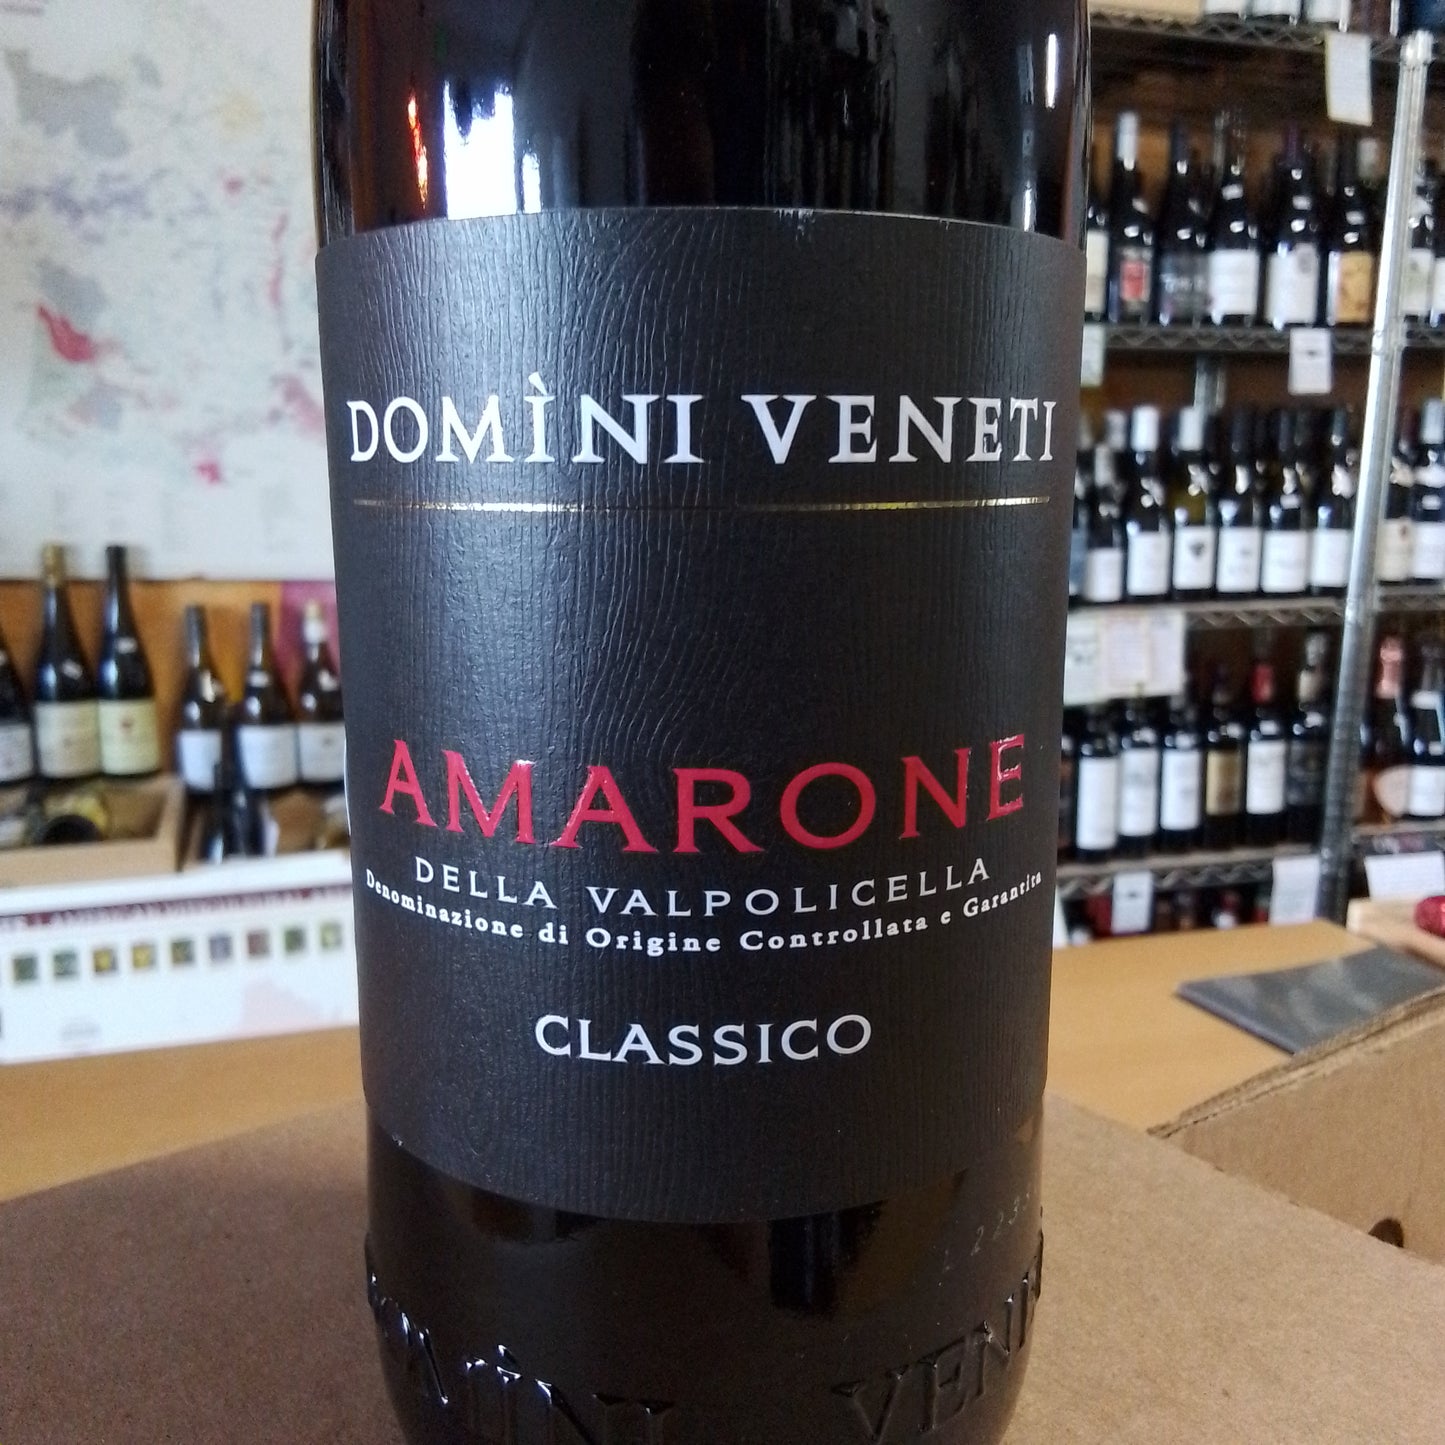 DOMINI VENETI 2019 Red Blend 'Amarone della Valpolicella Classico' (Veneto, Italy)